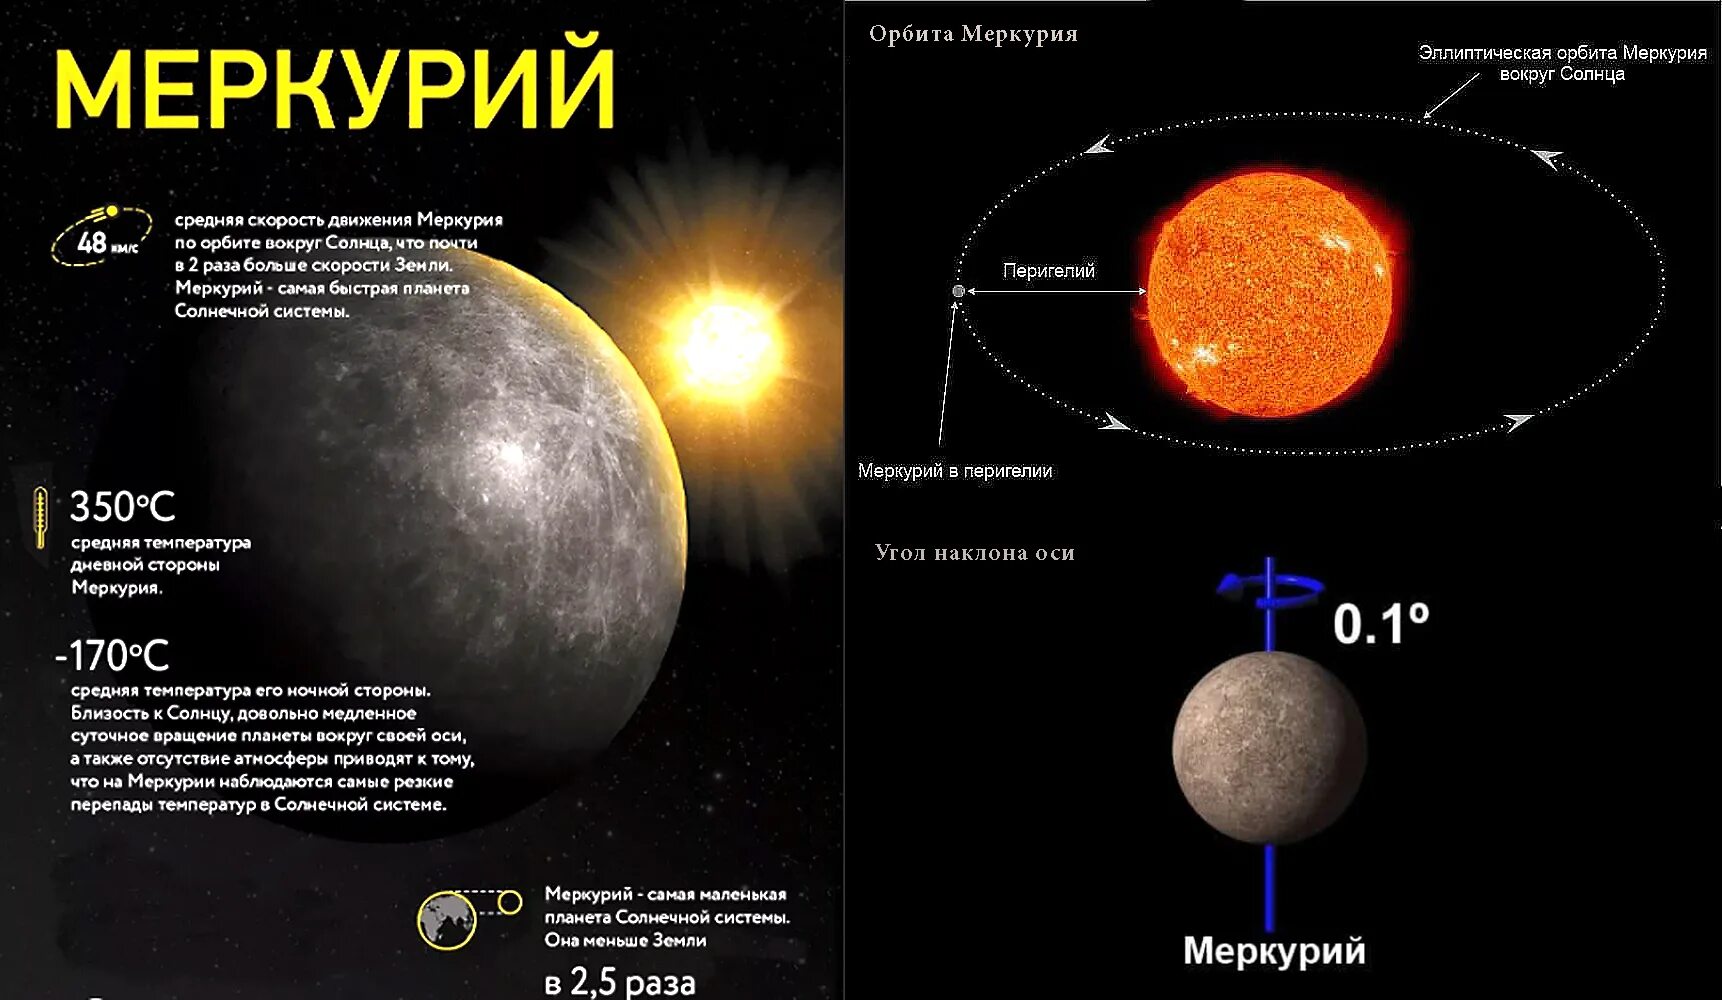 Скорость венеры вокруг солнца км с. Направление вращения Меркурия. Меркурий Орбита вокруг солнца. Меркурий Планета угол наклона оси. Угол наклона оси вращения Меркурия.